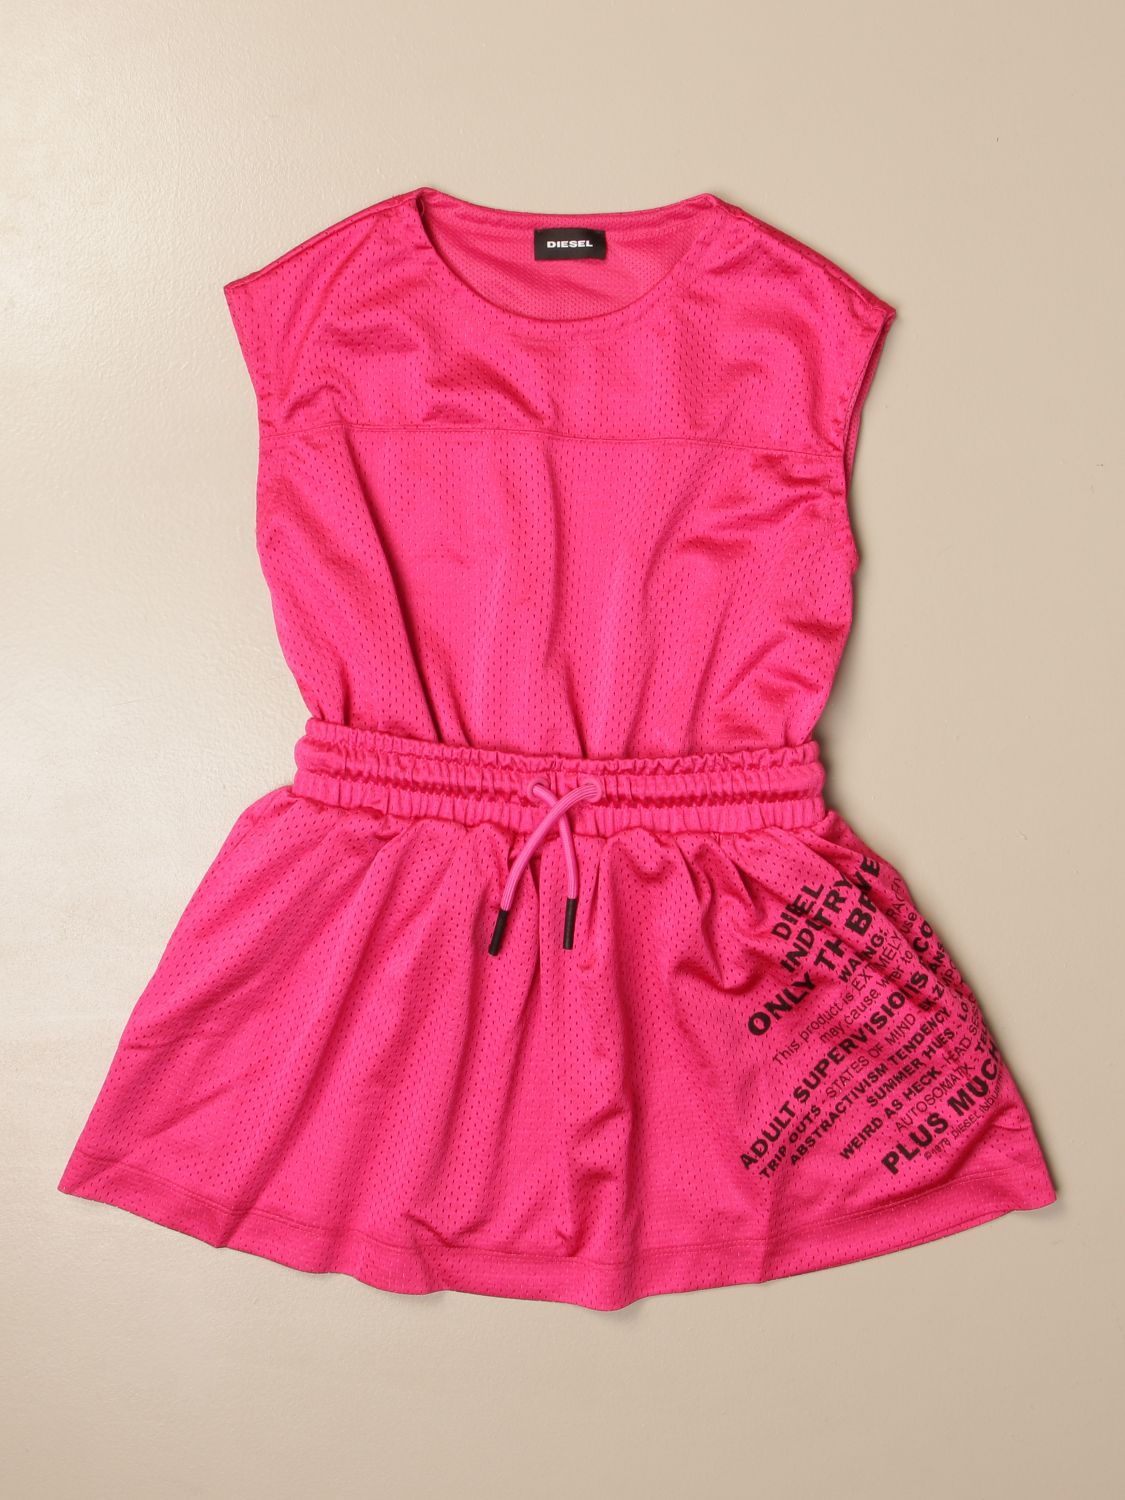 Dress Diesel: Diesel dress with logo pink 1